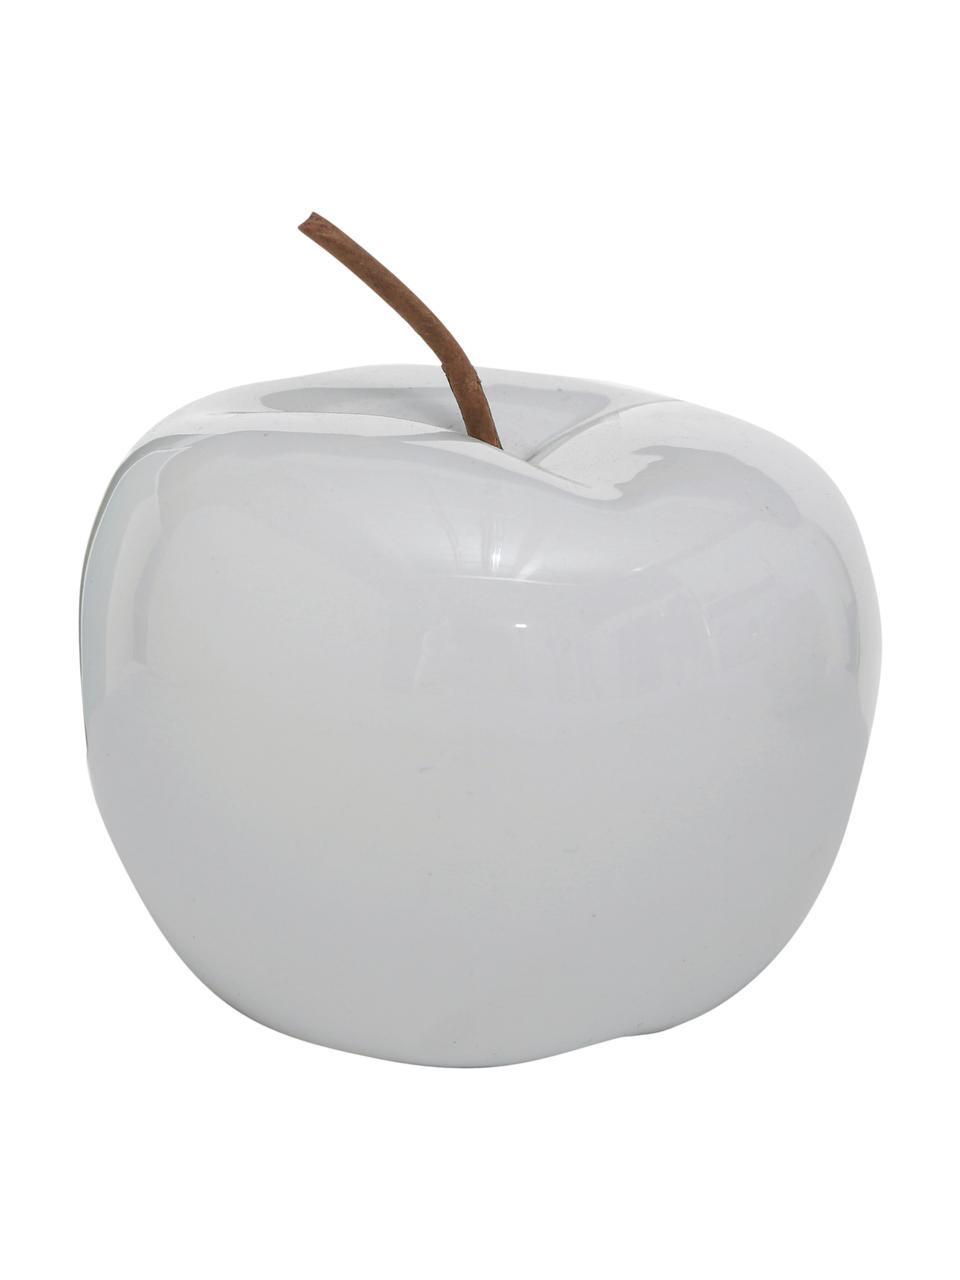 Dekorativní jablka Alvaro, V 12 cm, 2 kusy, Kamenina, Bílá, světle šedá, Ø 13 cm, V 12 cm